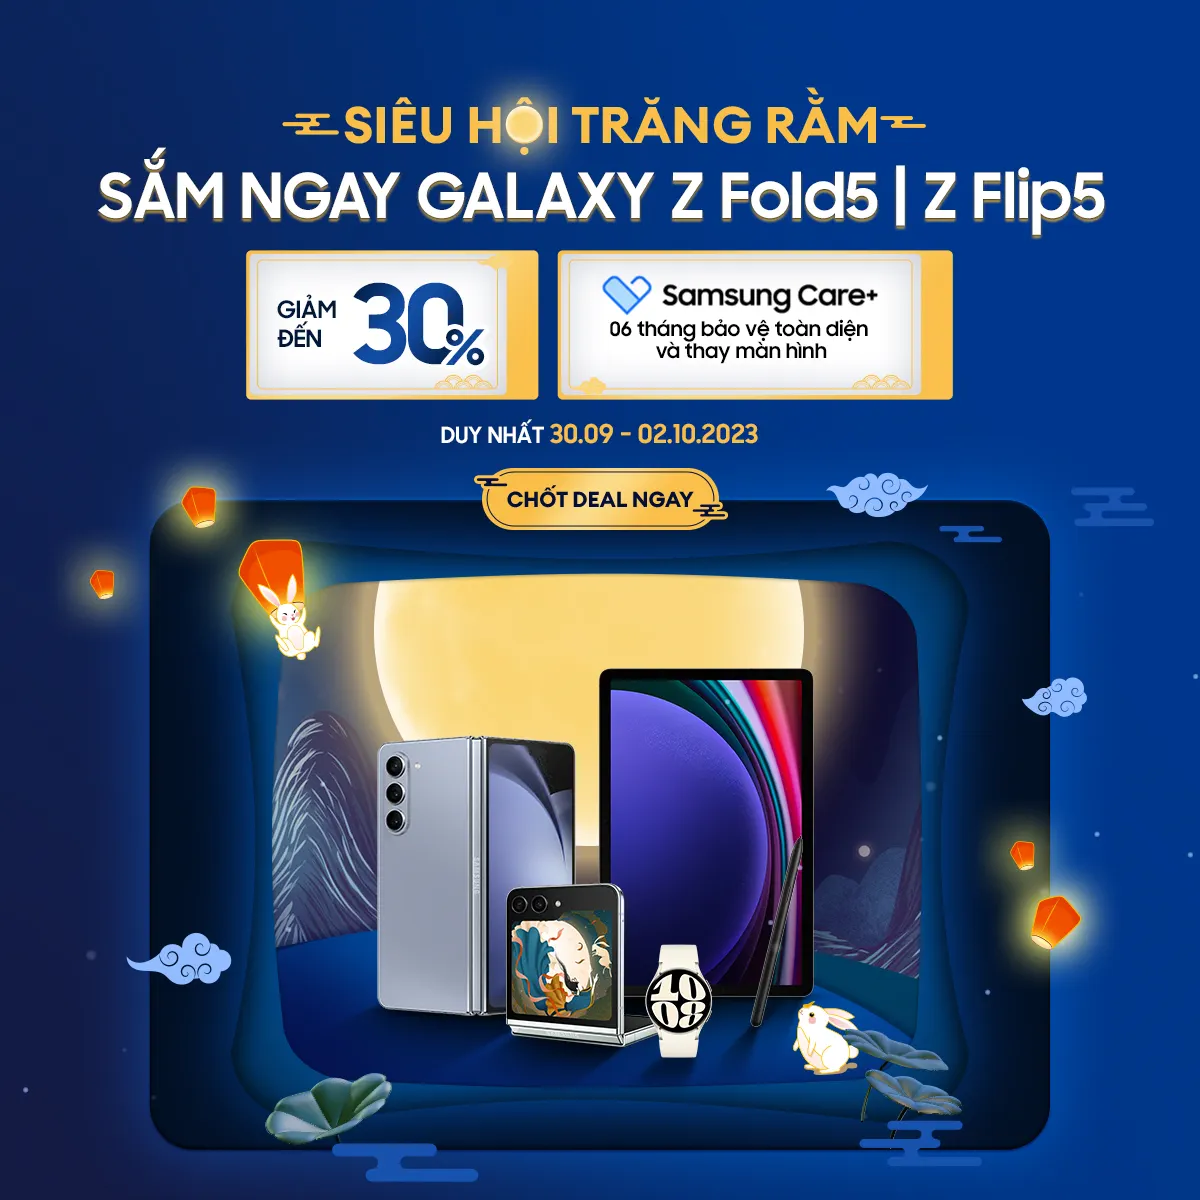 Siêu Hội Trăng Rằm - Samsung tung siêu ưu đãi lên đến 30% cho Galaxy Z Flip5 và Z Fold5